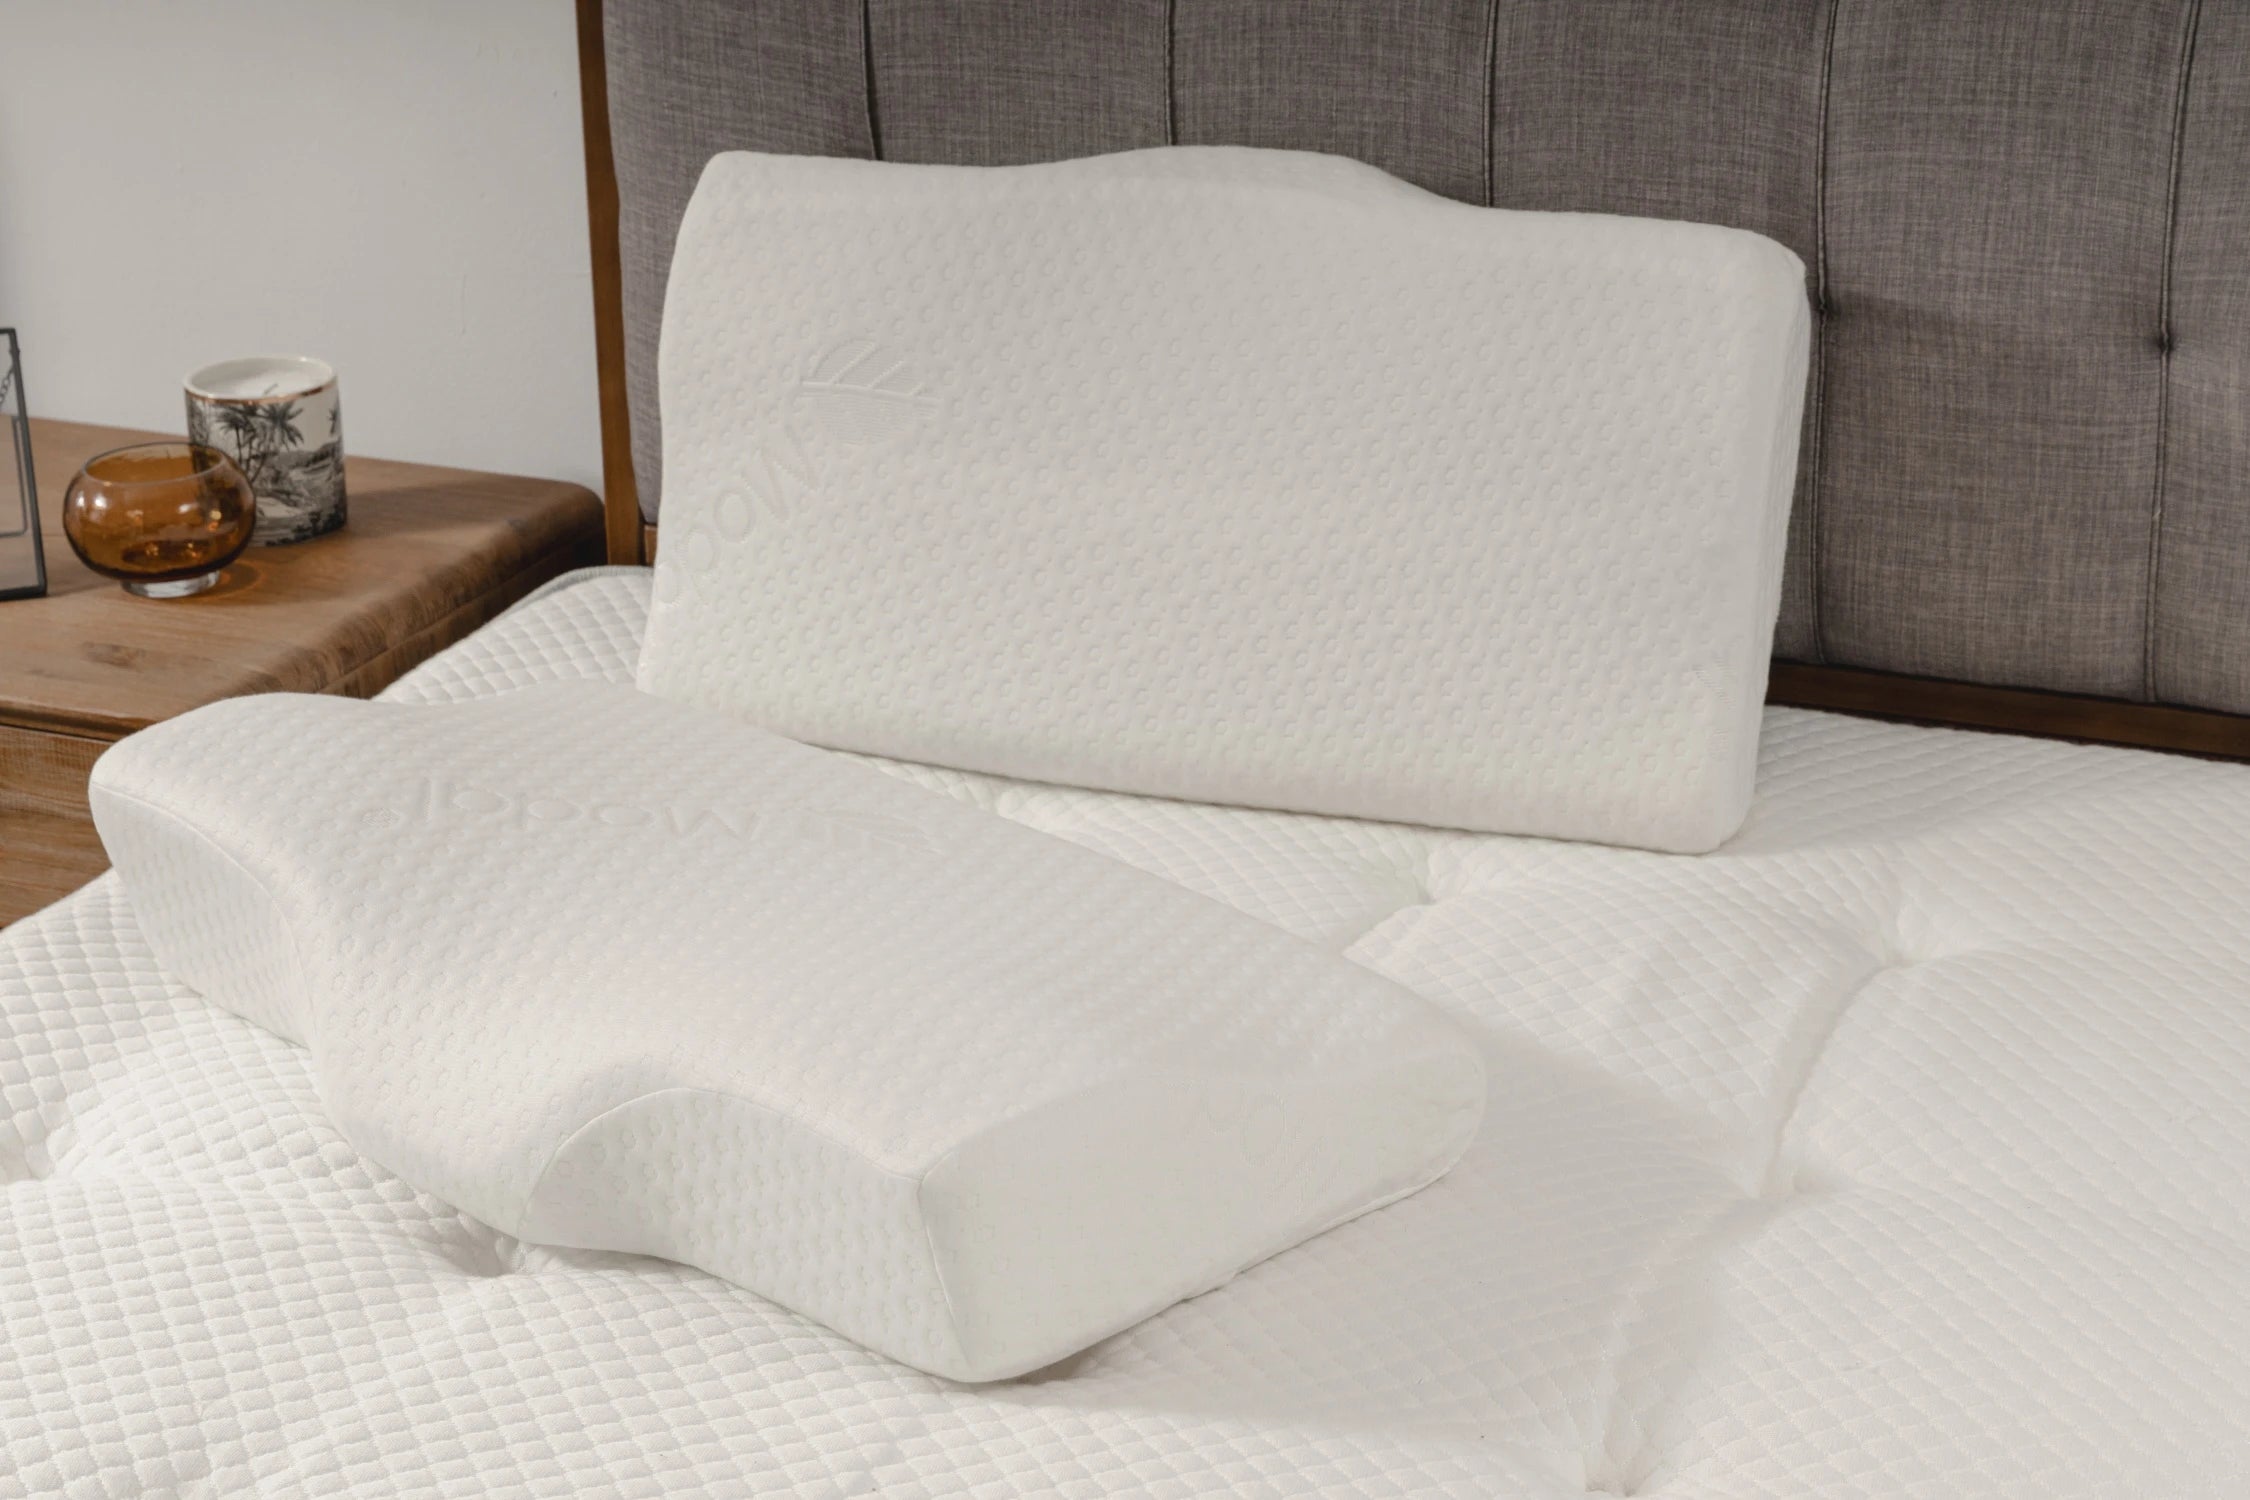 護頸工學記憶枕產品情境照 - 兩顆護頸工學記憶枕放置於床上另一角度呈現